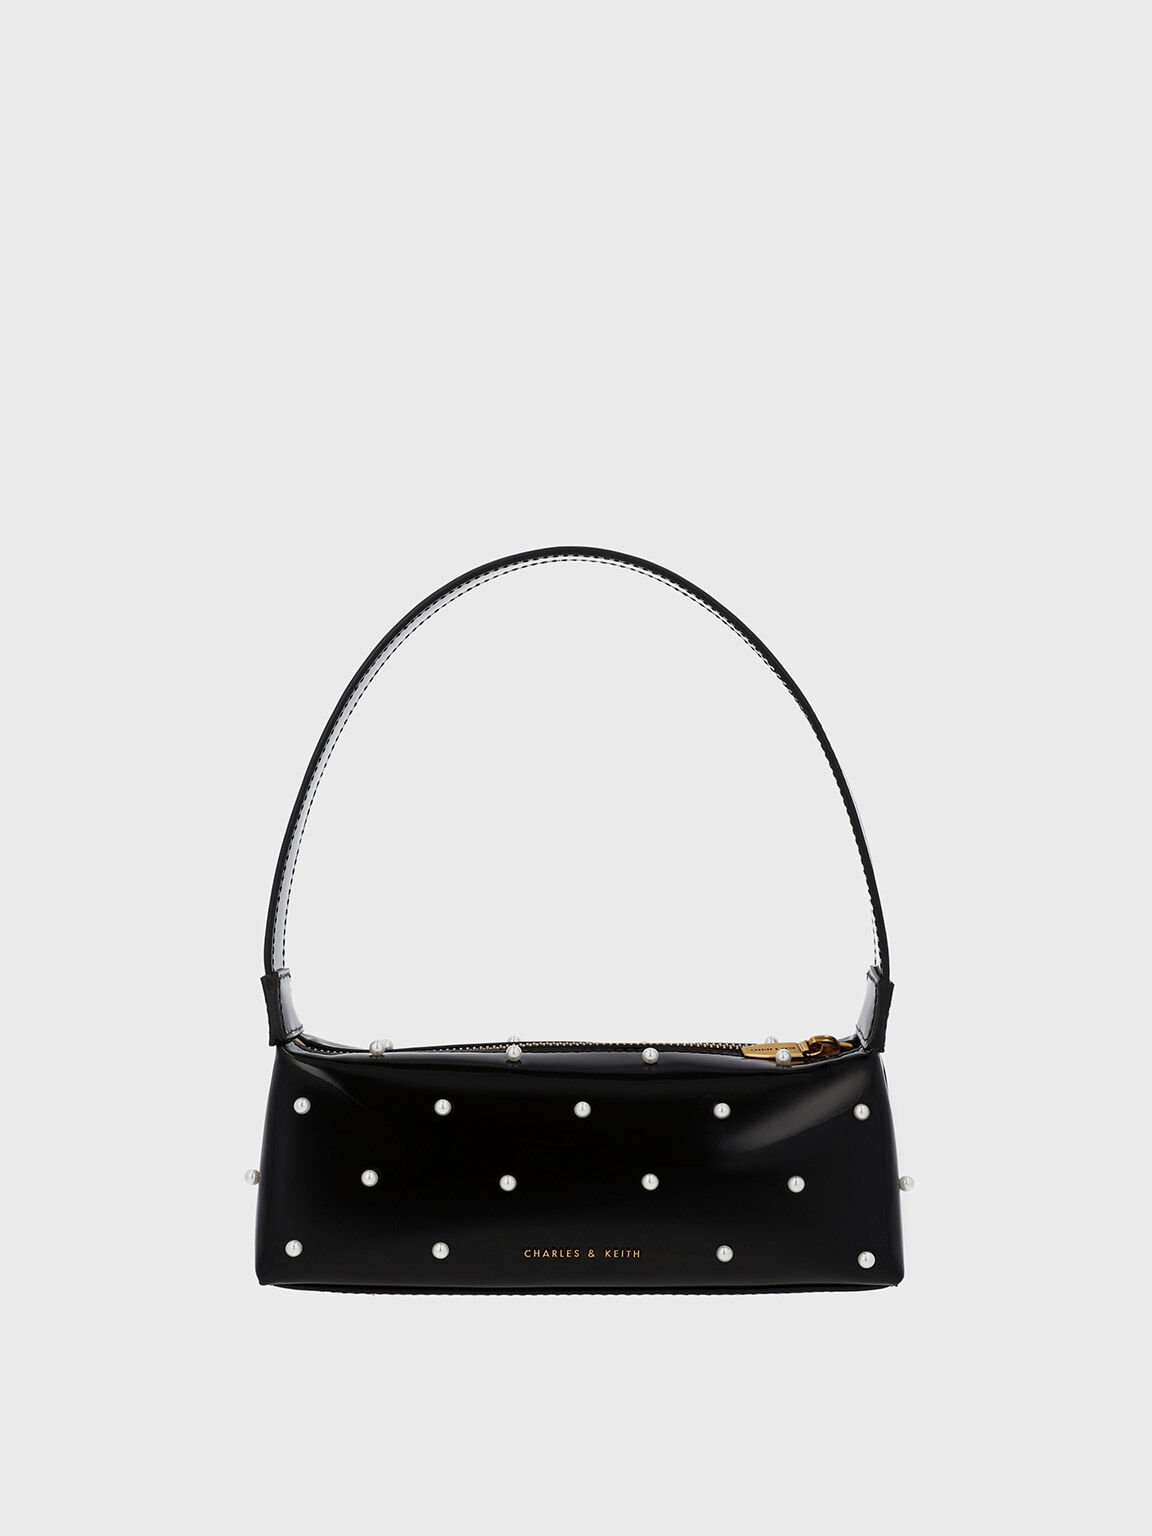 Fashion Copy Luxury Square Box Handbags Black Colorful Crystal